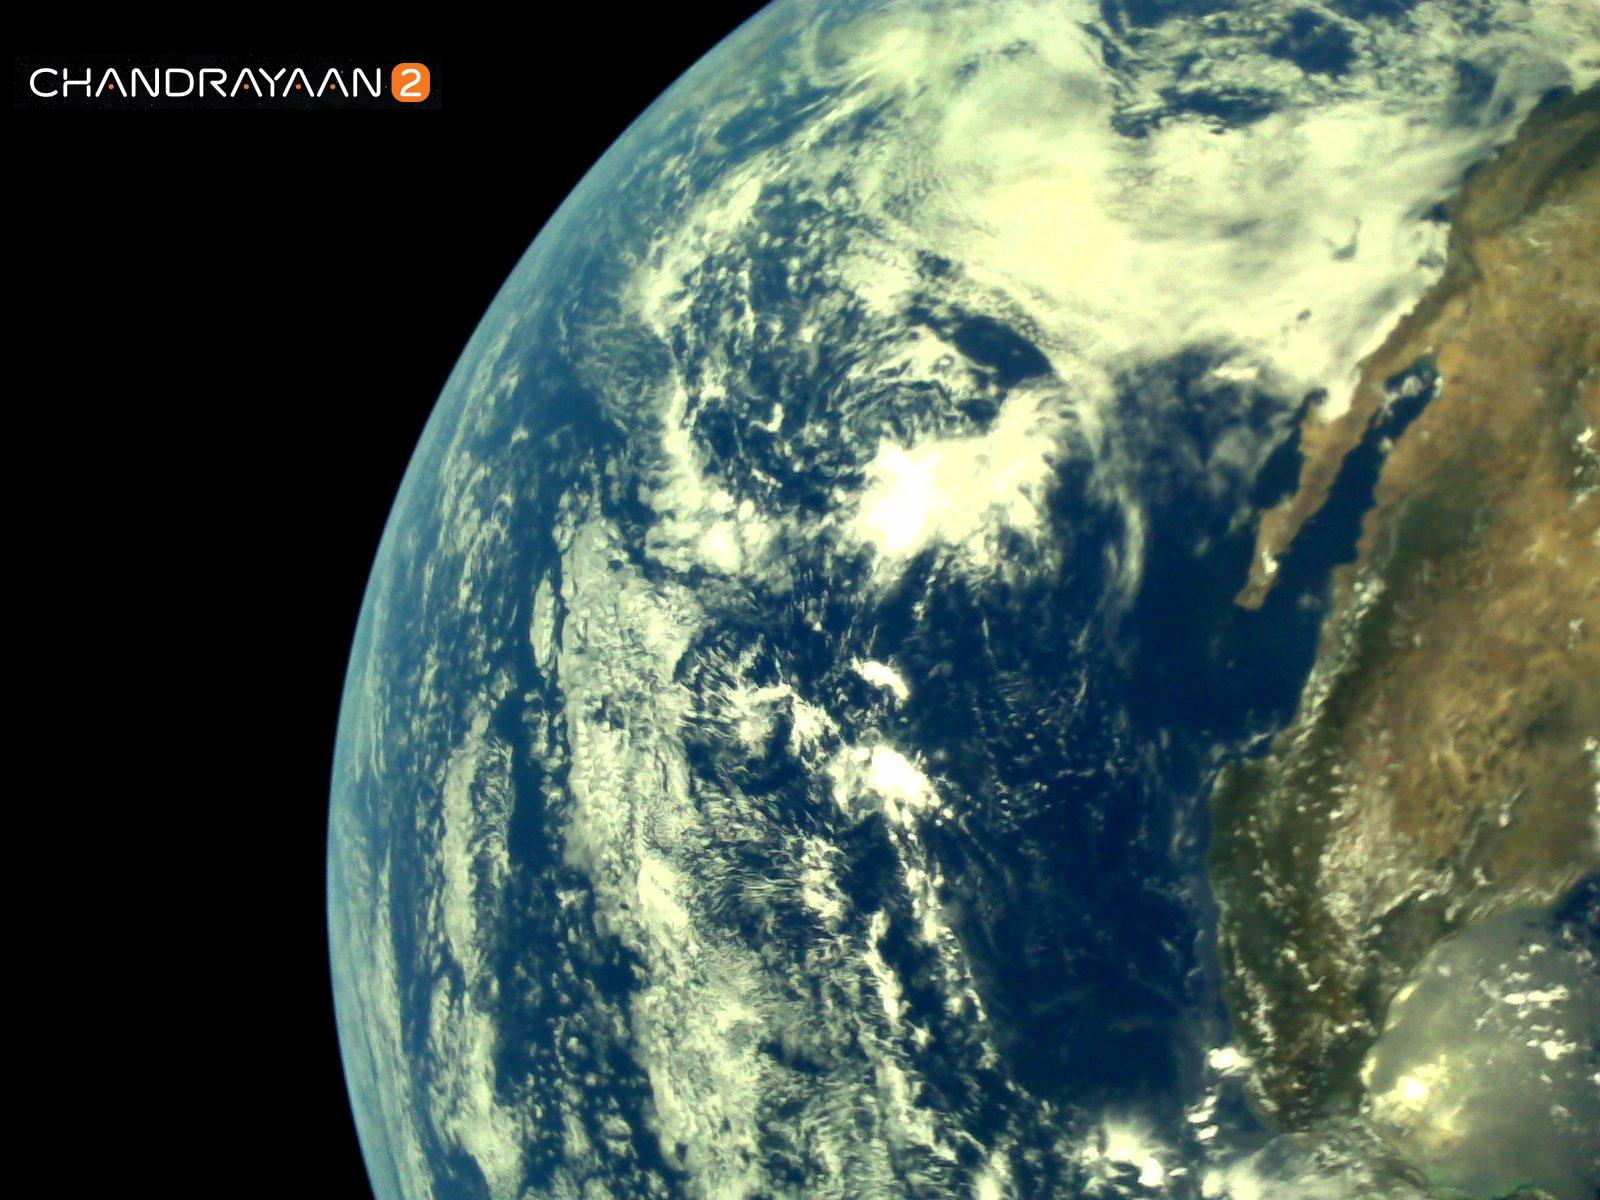 ISRO, Chandrayaan-2, K Sivan, Moon, lunar mission, The Federal, English news website